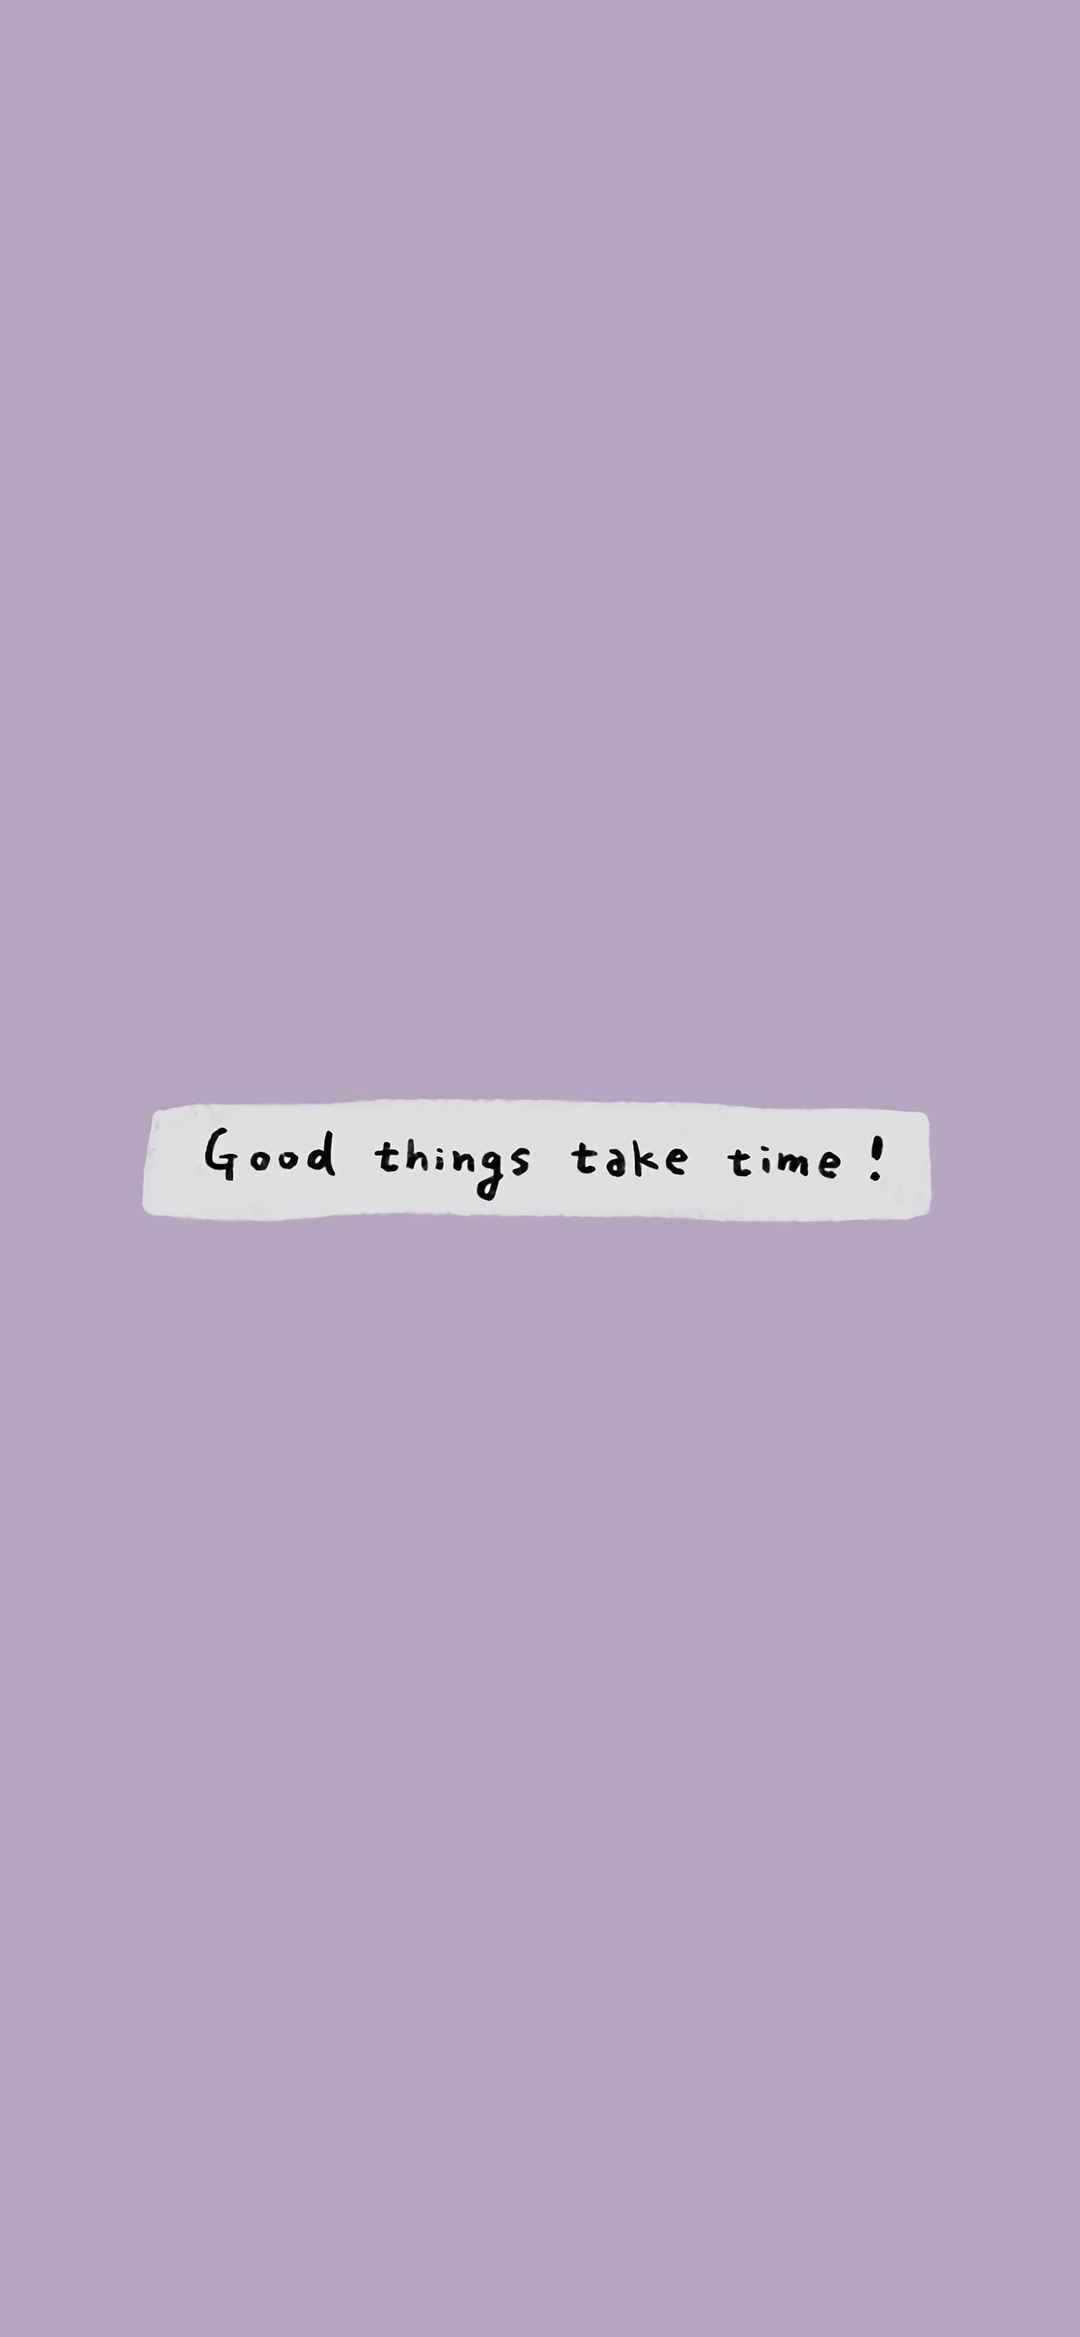 good things take time!